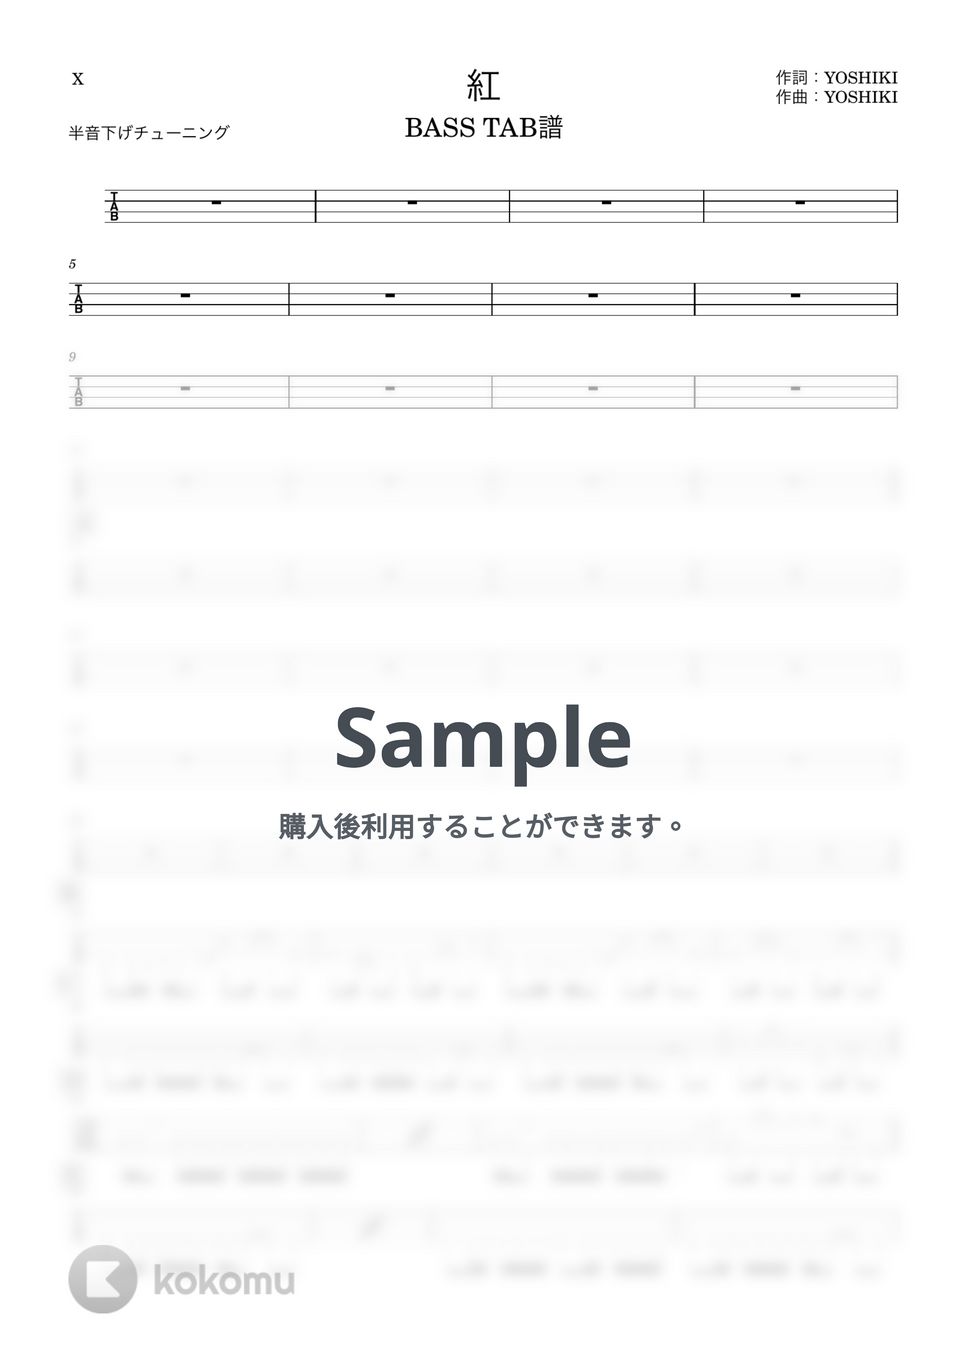 X - 紅 (『ベースTAB譜』半音下げチューニング4弦ベース対応) by 箱譜屋